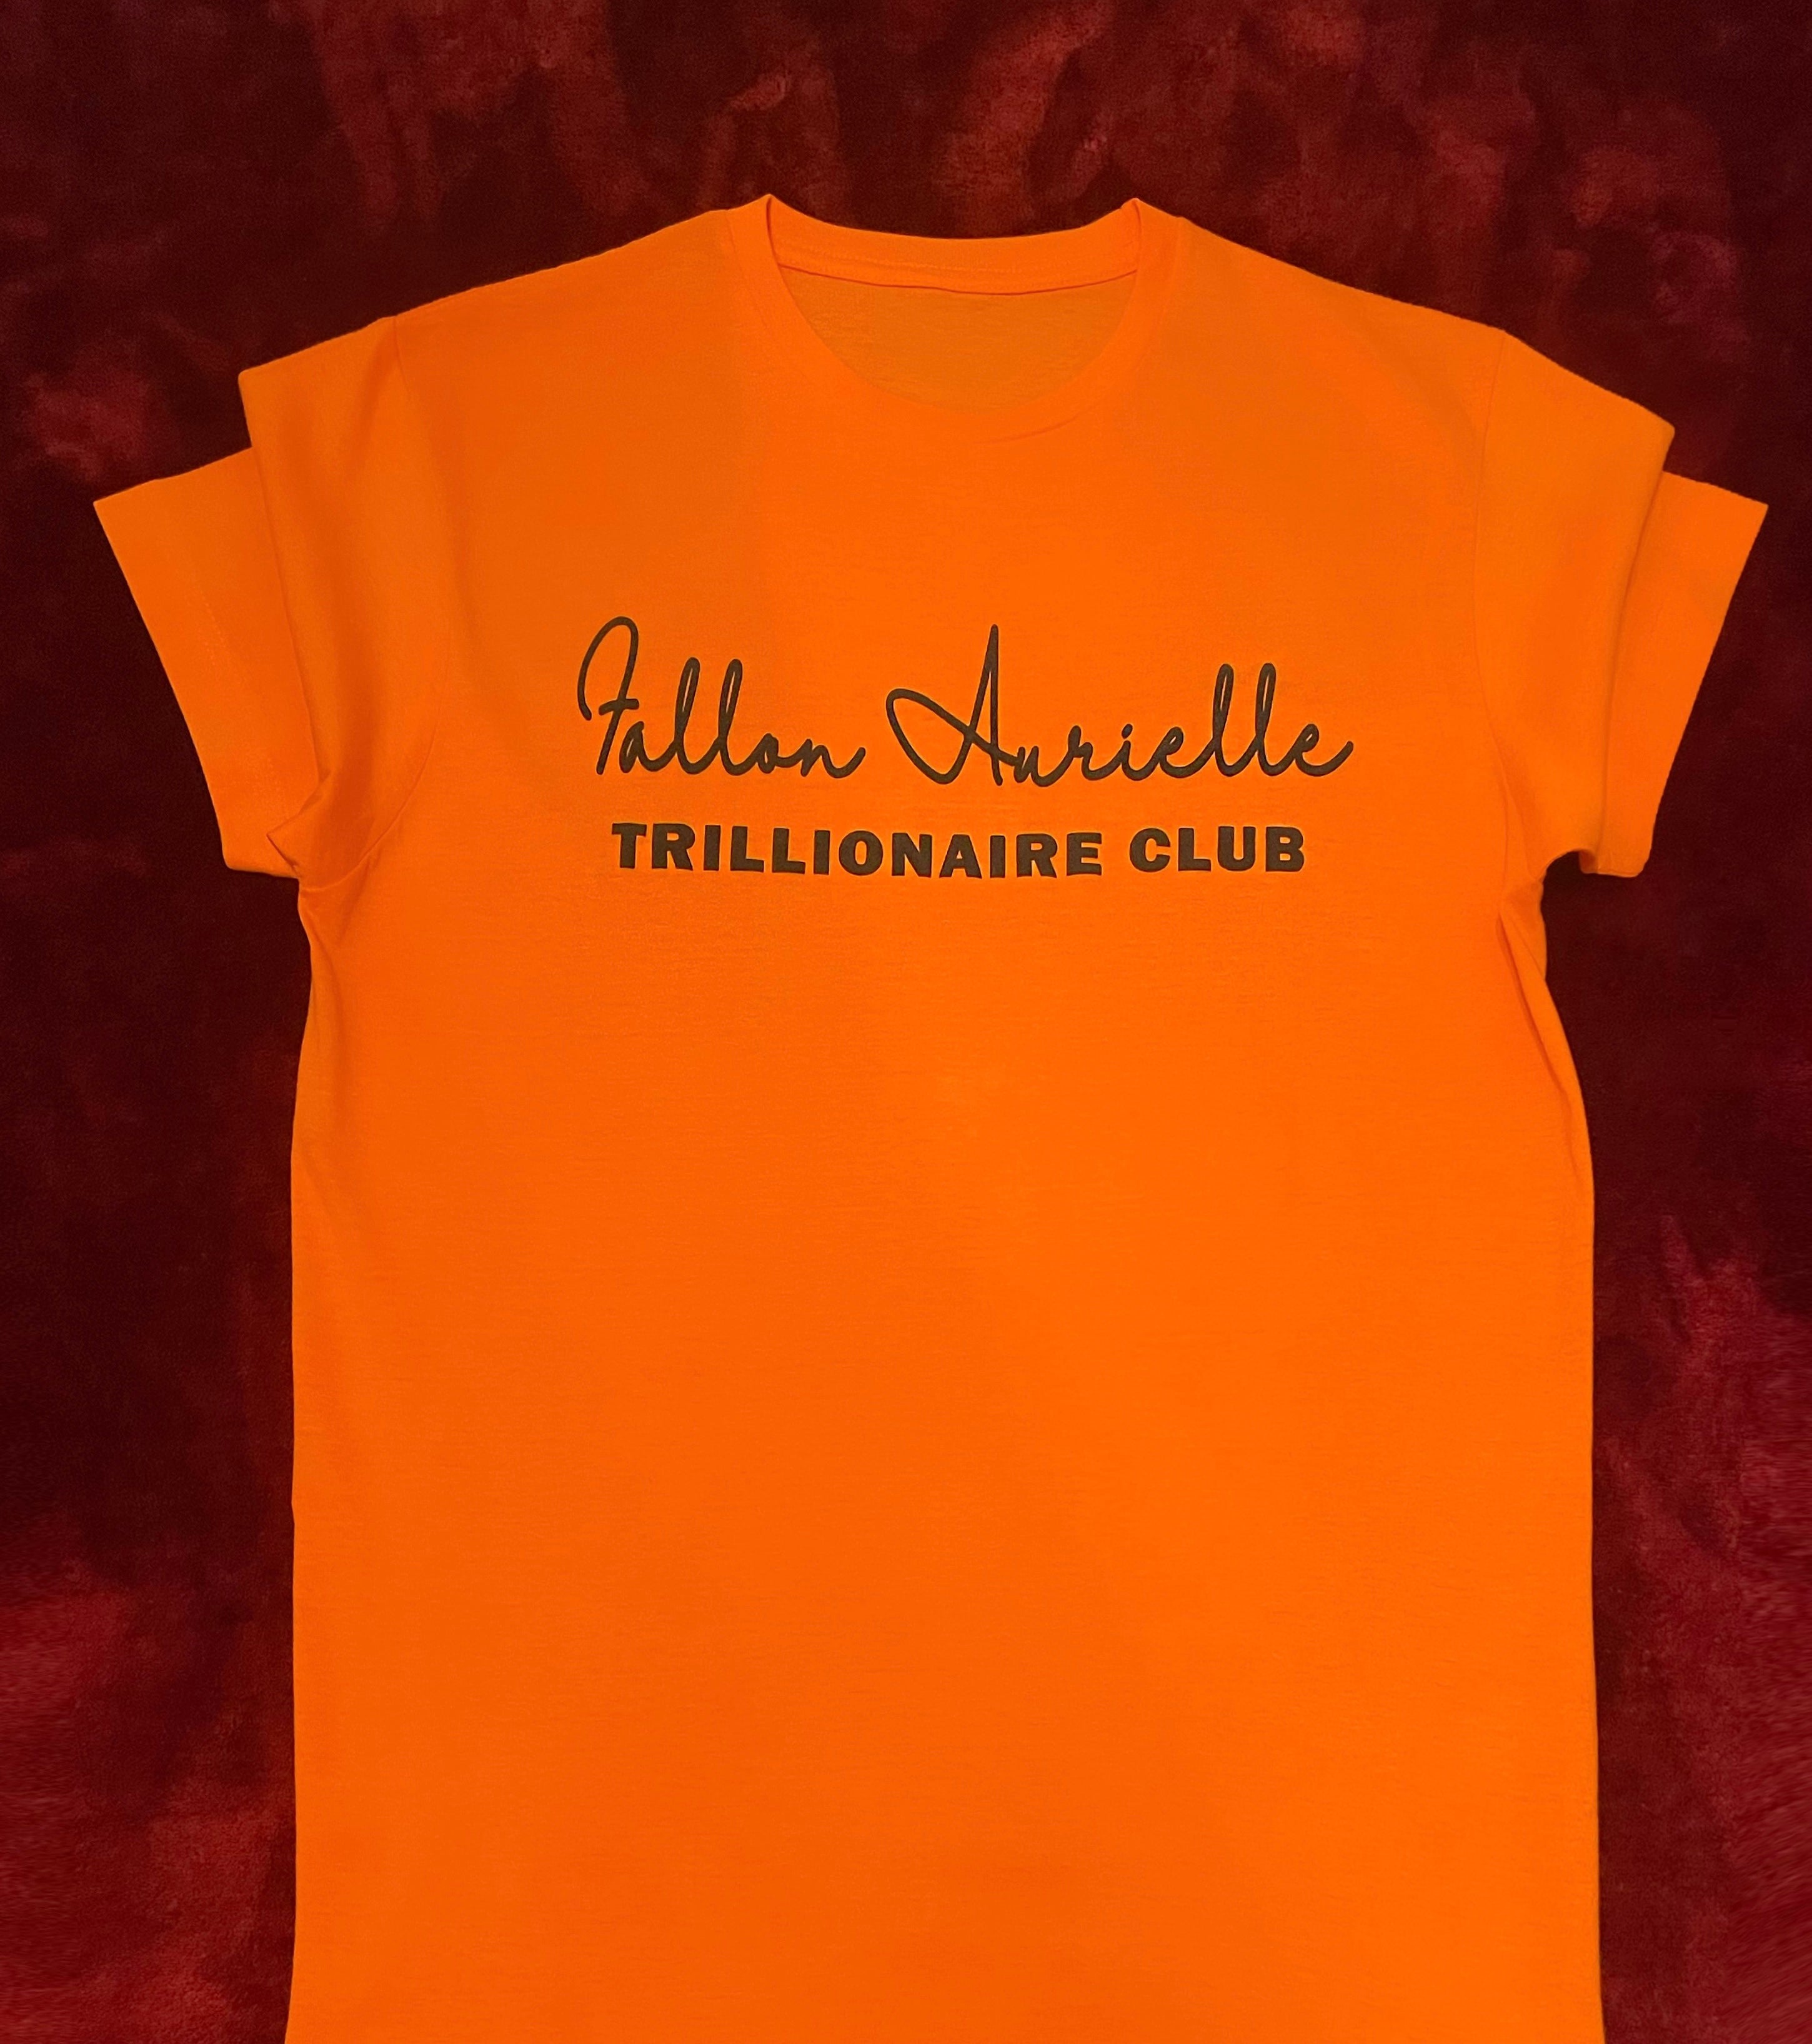 Fallon Aurielle Unisex Signature Trillionaire Club T-Shirt (Orange & Black)